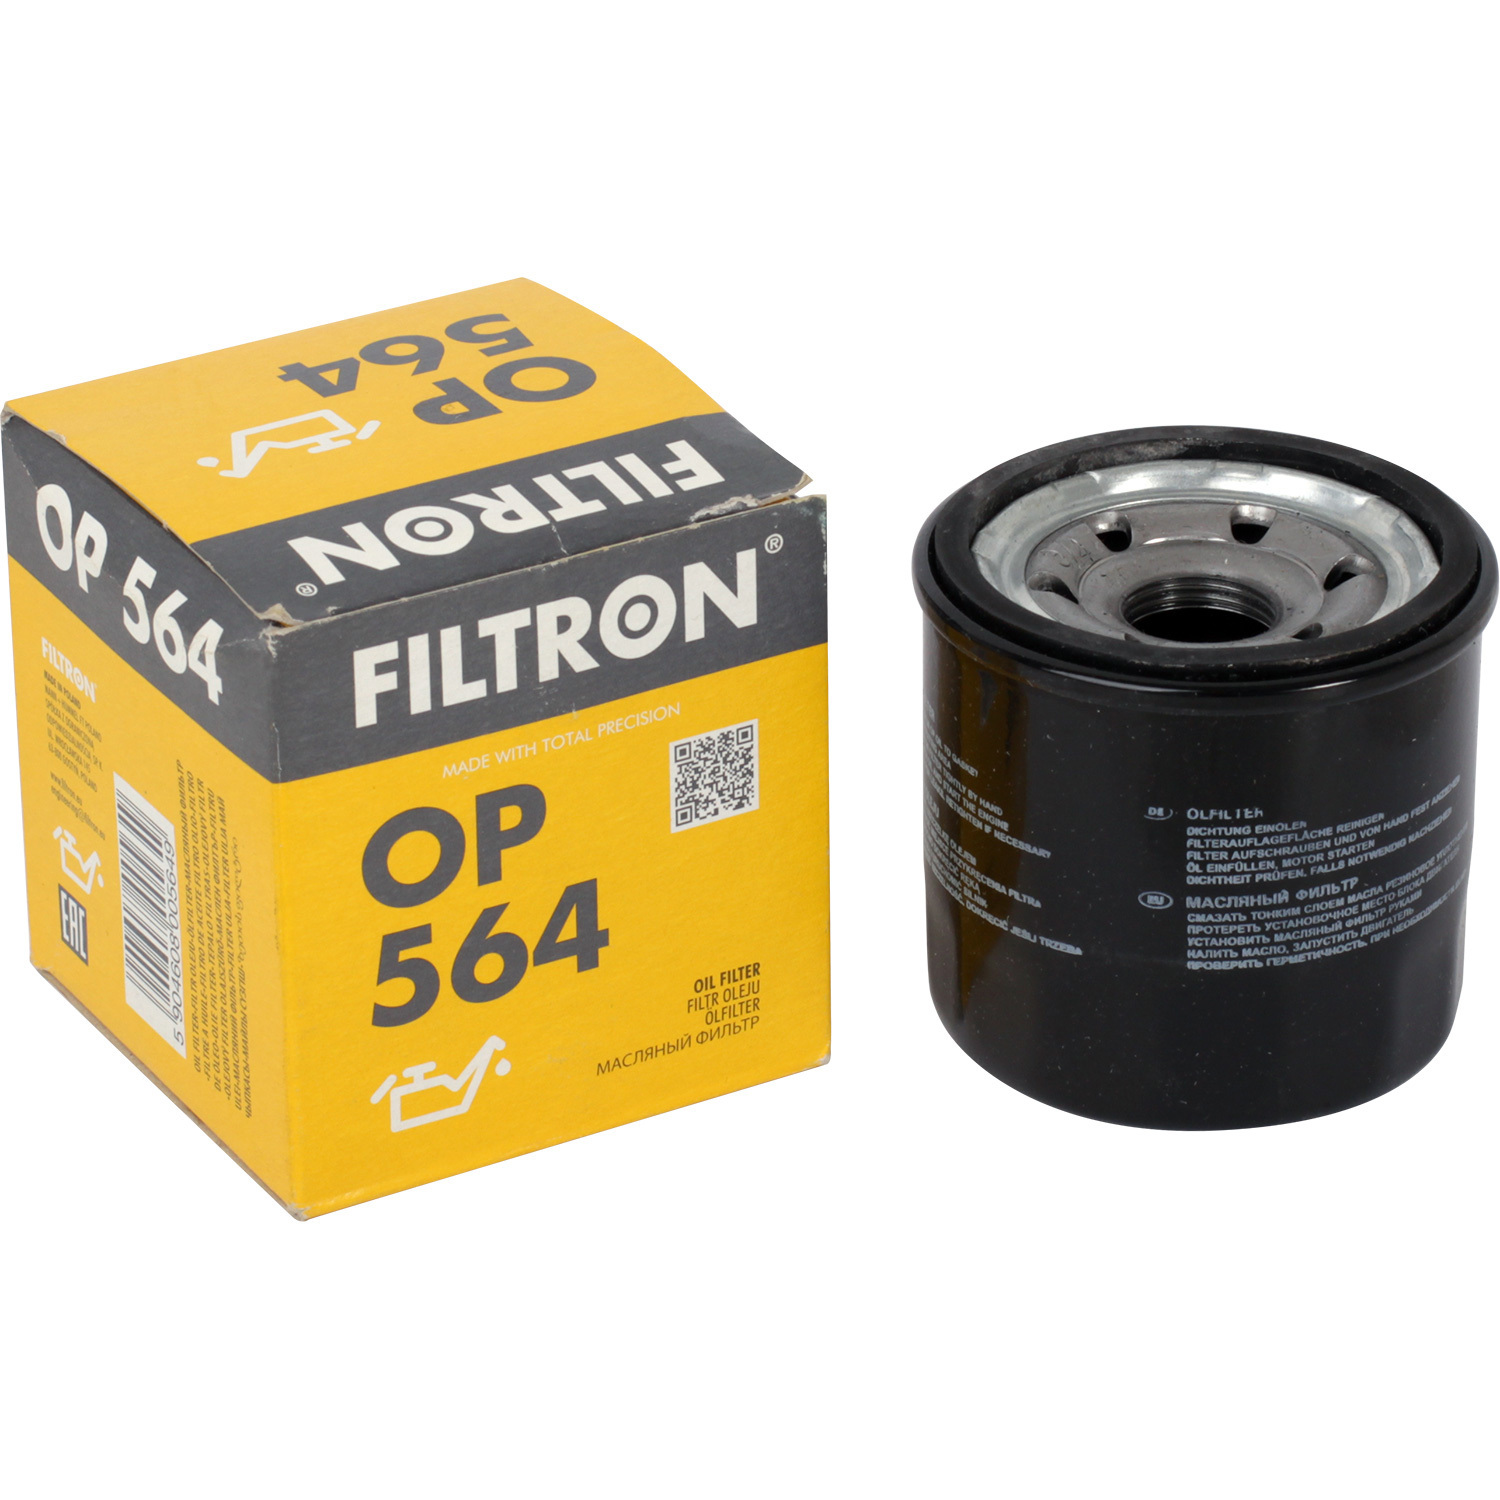 фильтры filtron фильтр масляный filtron oe671 Фильтры Filtron Фильтр масляный Filtron OP564